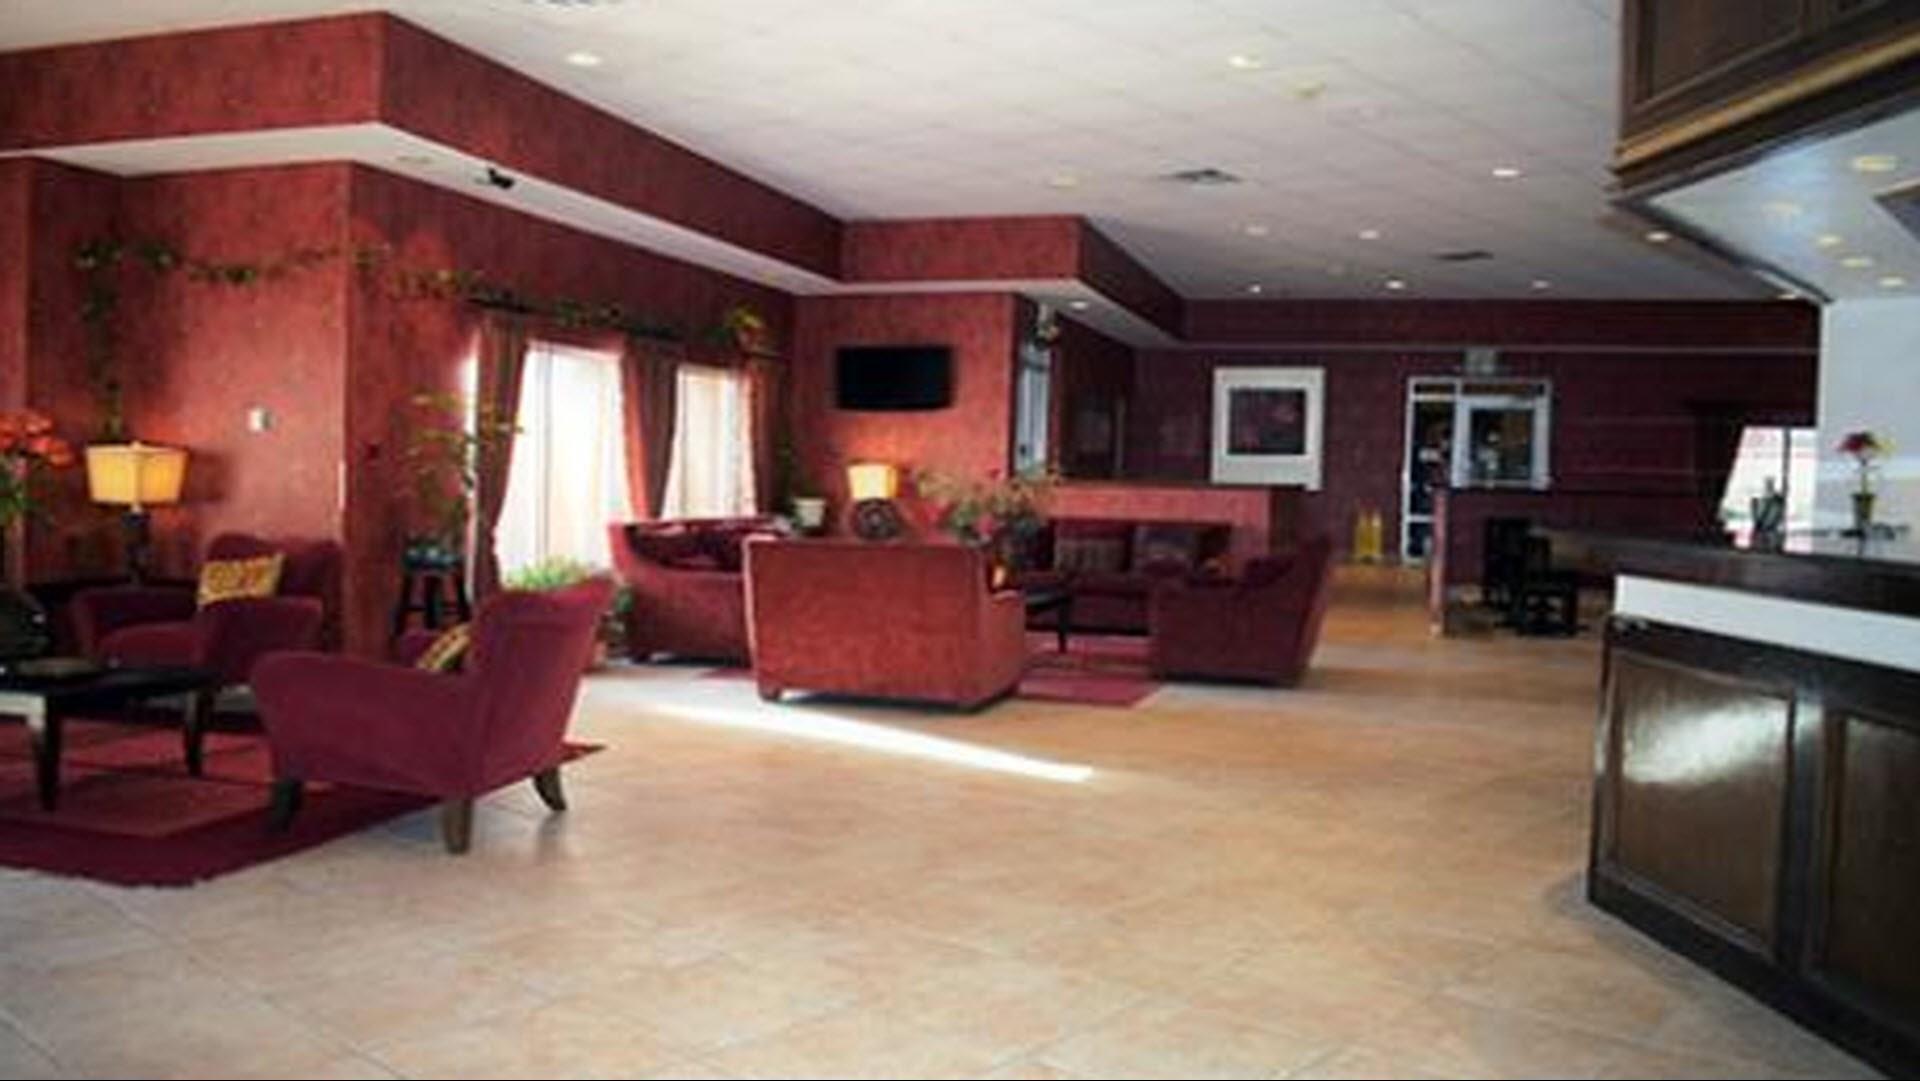 Budget Host Inn & Suites - Denton in Denton, TX